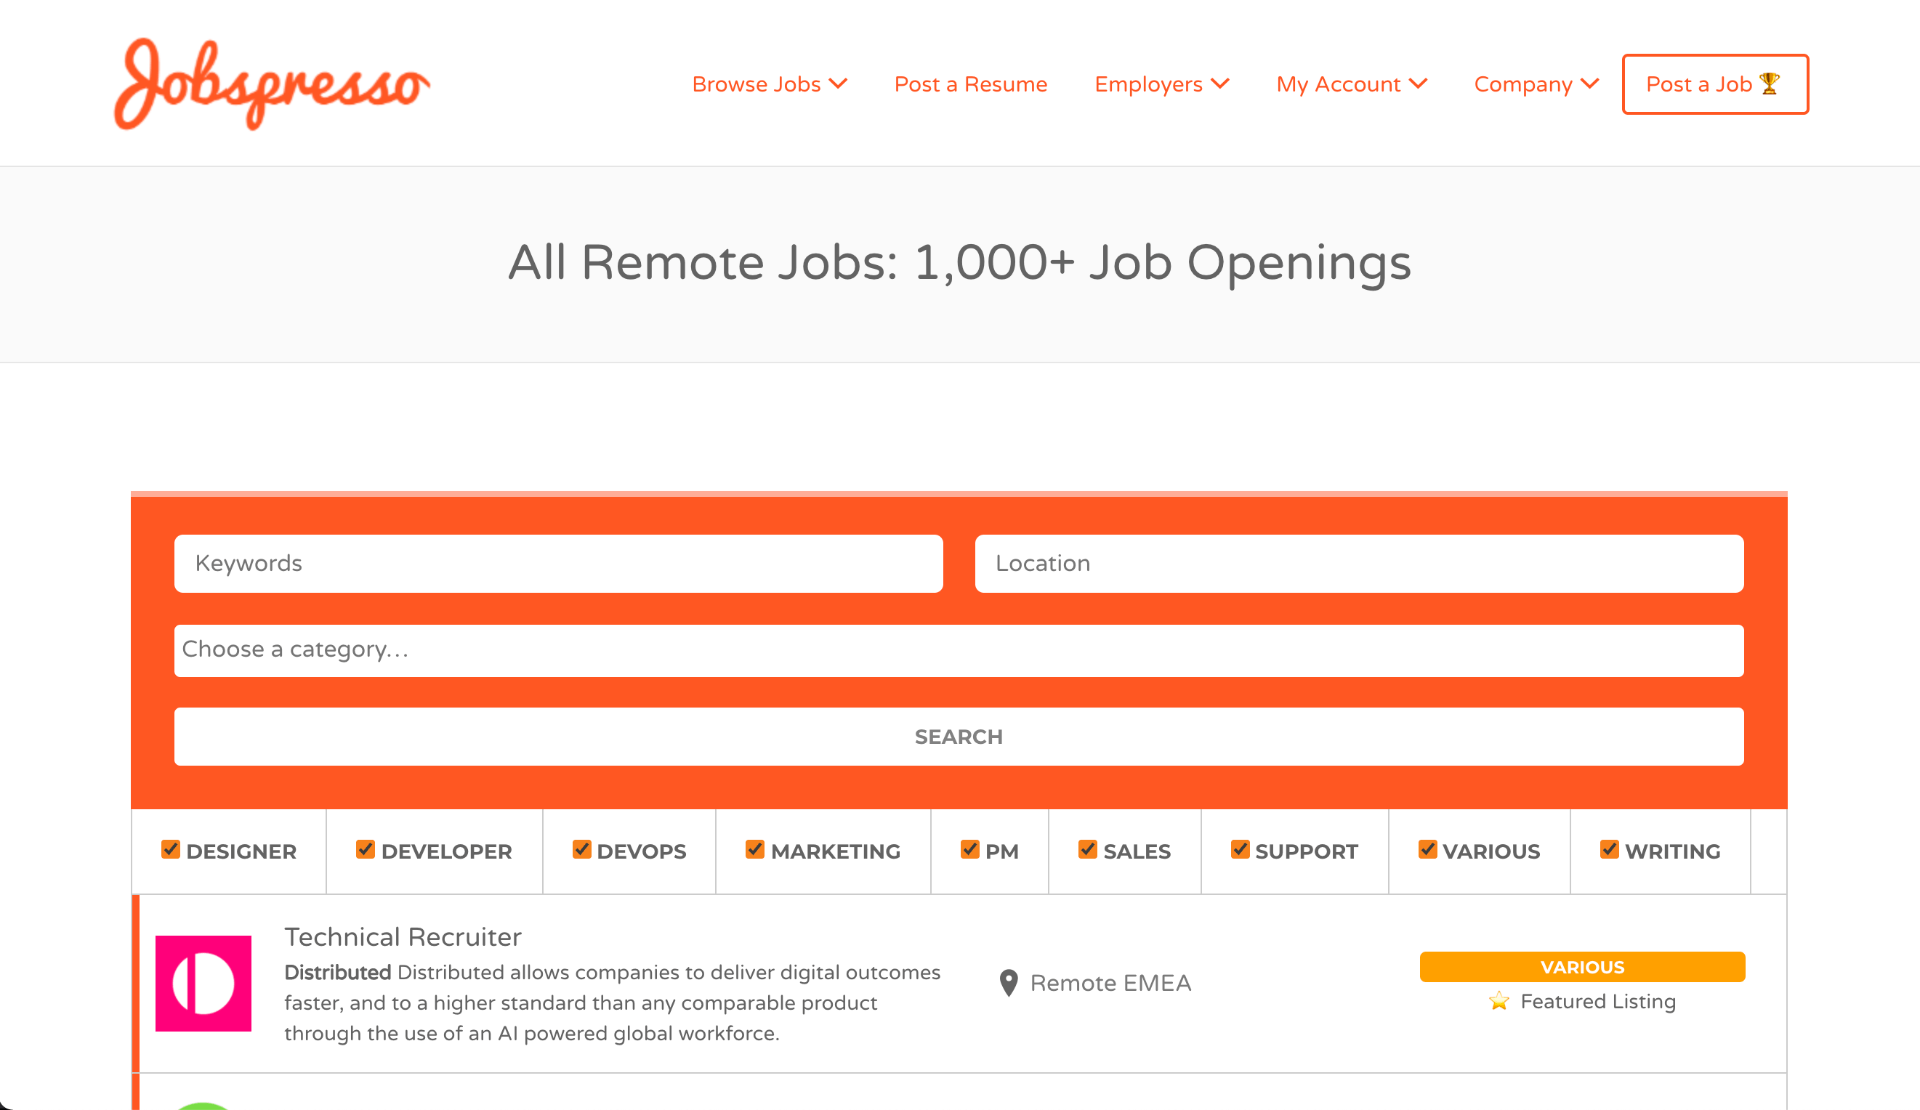 Jobspresso - Look for Online Jobs